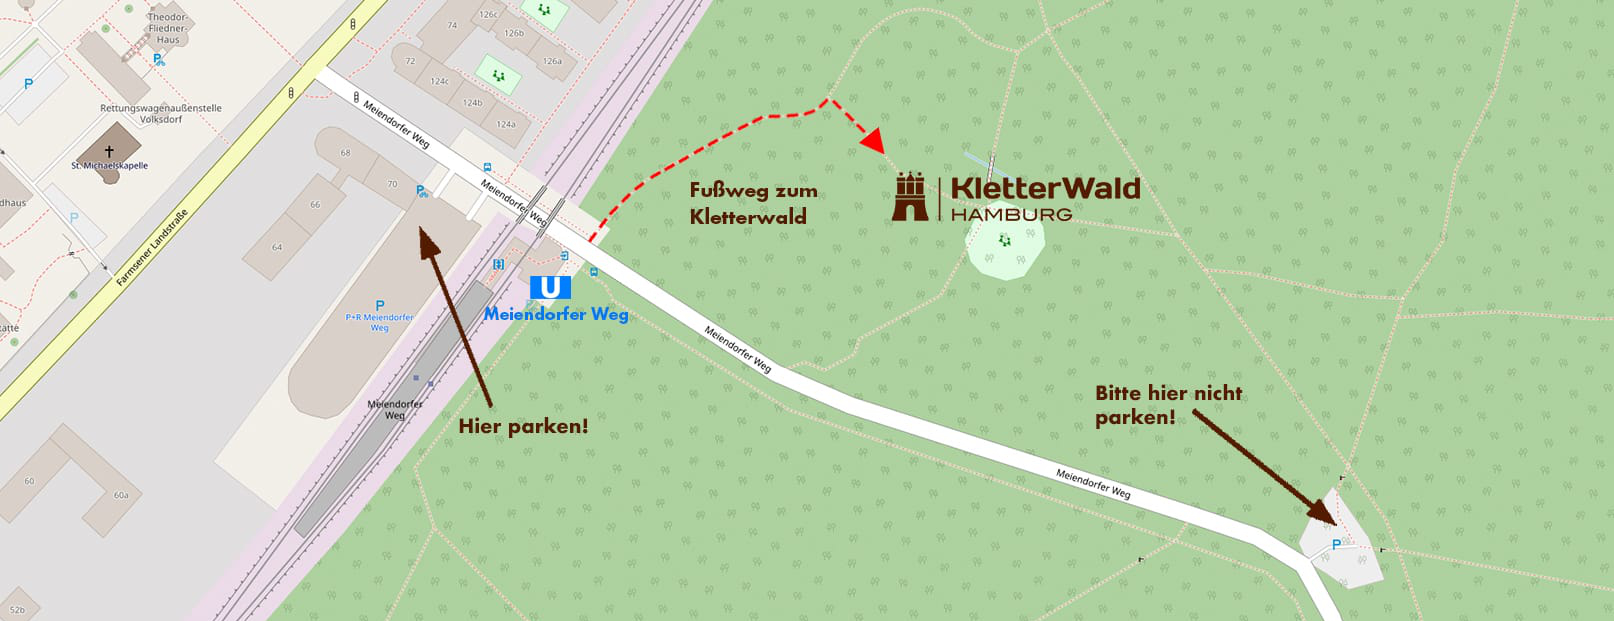 Lageplan Kletterwald